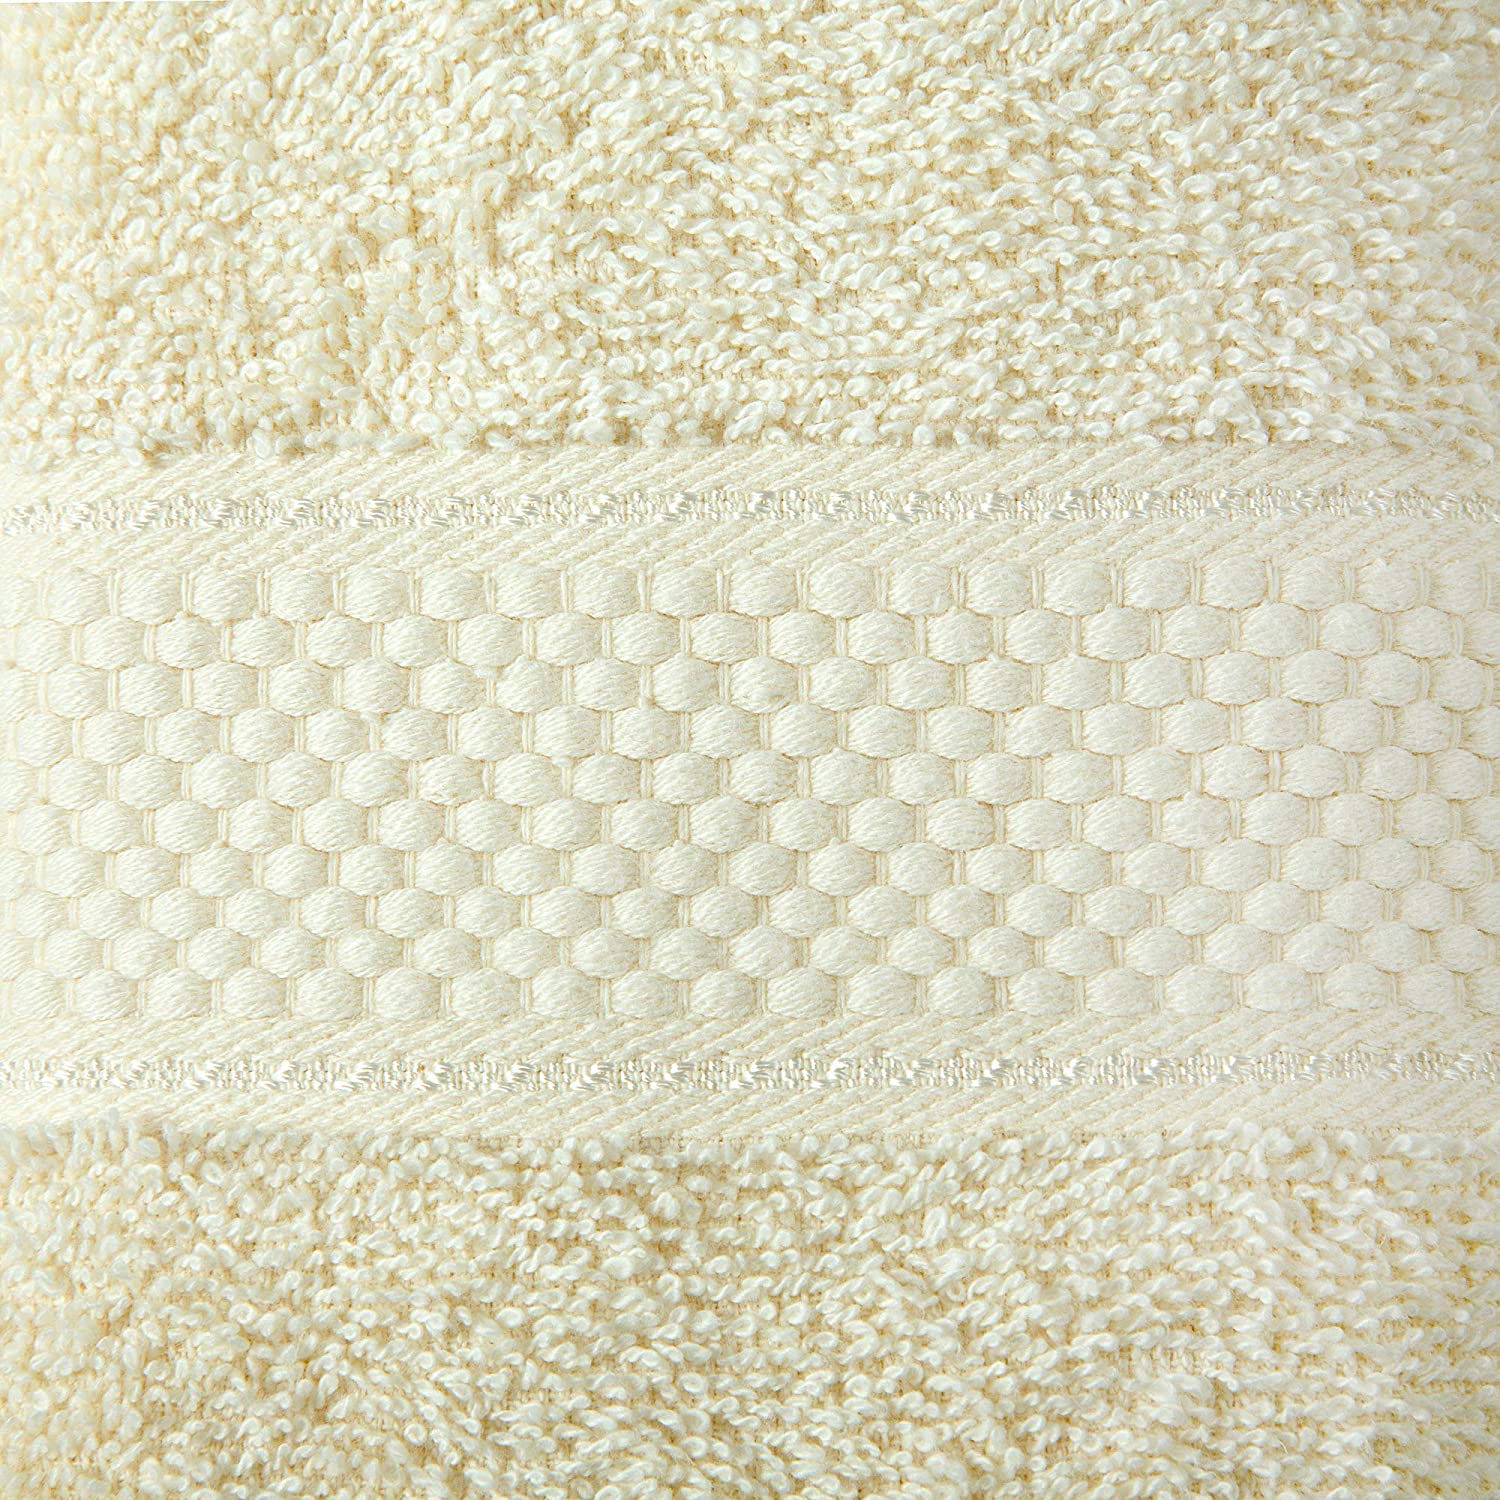 2 Pcs Bath Cotton Towel Bale Set Cream Plain